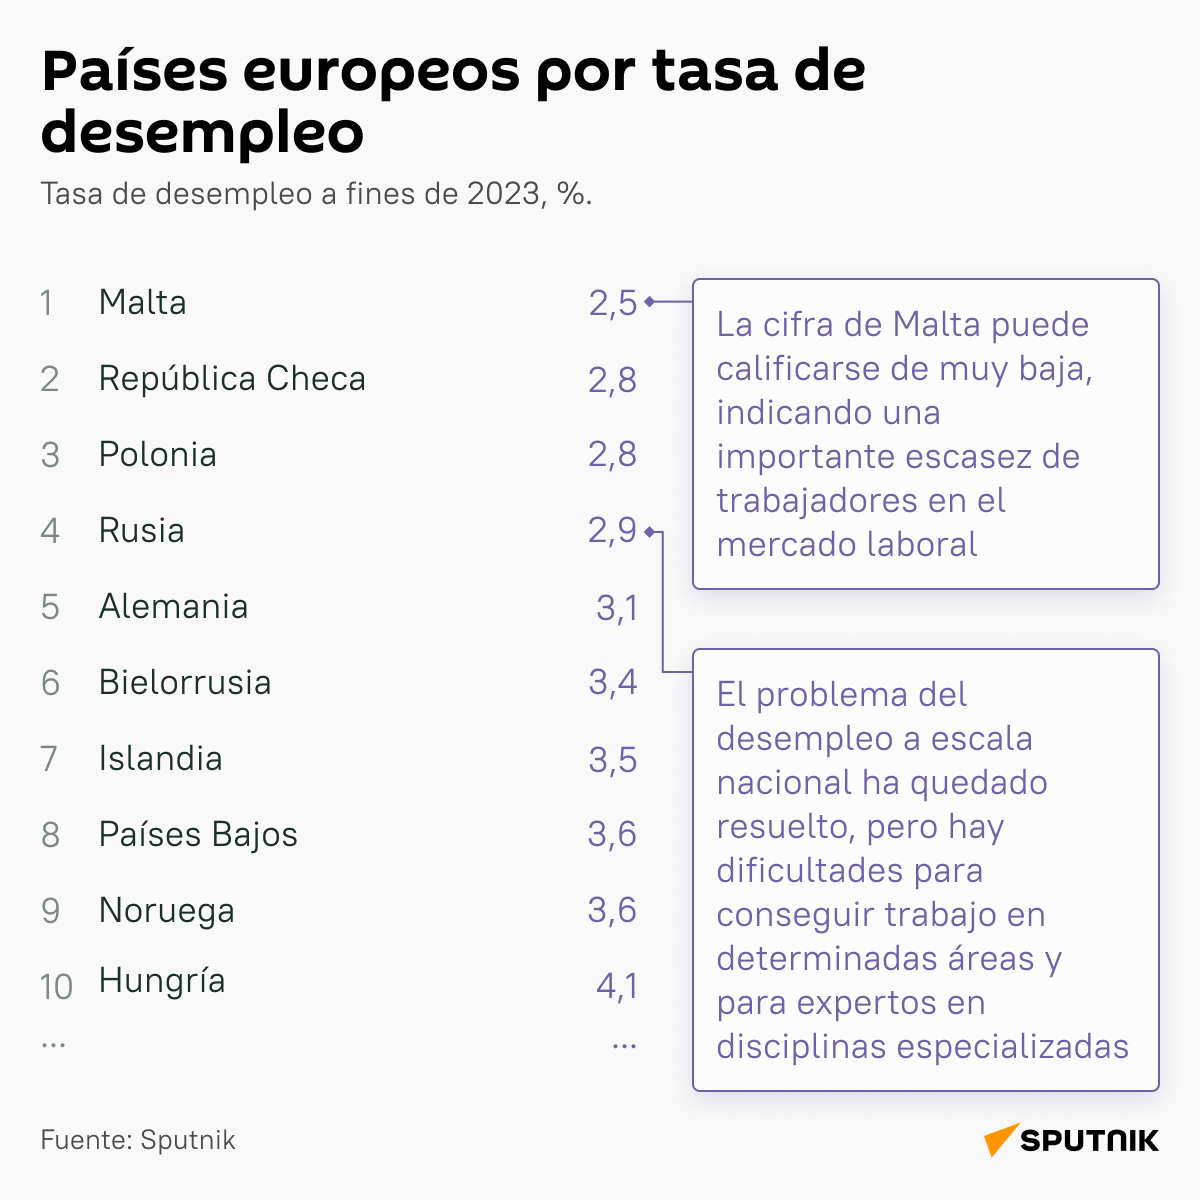 Países europeos por tasa de desempleo en 2023 - Sputnik Mundo